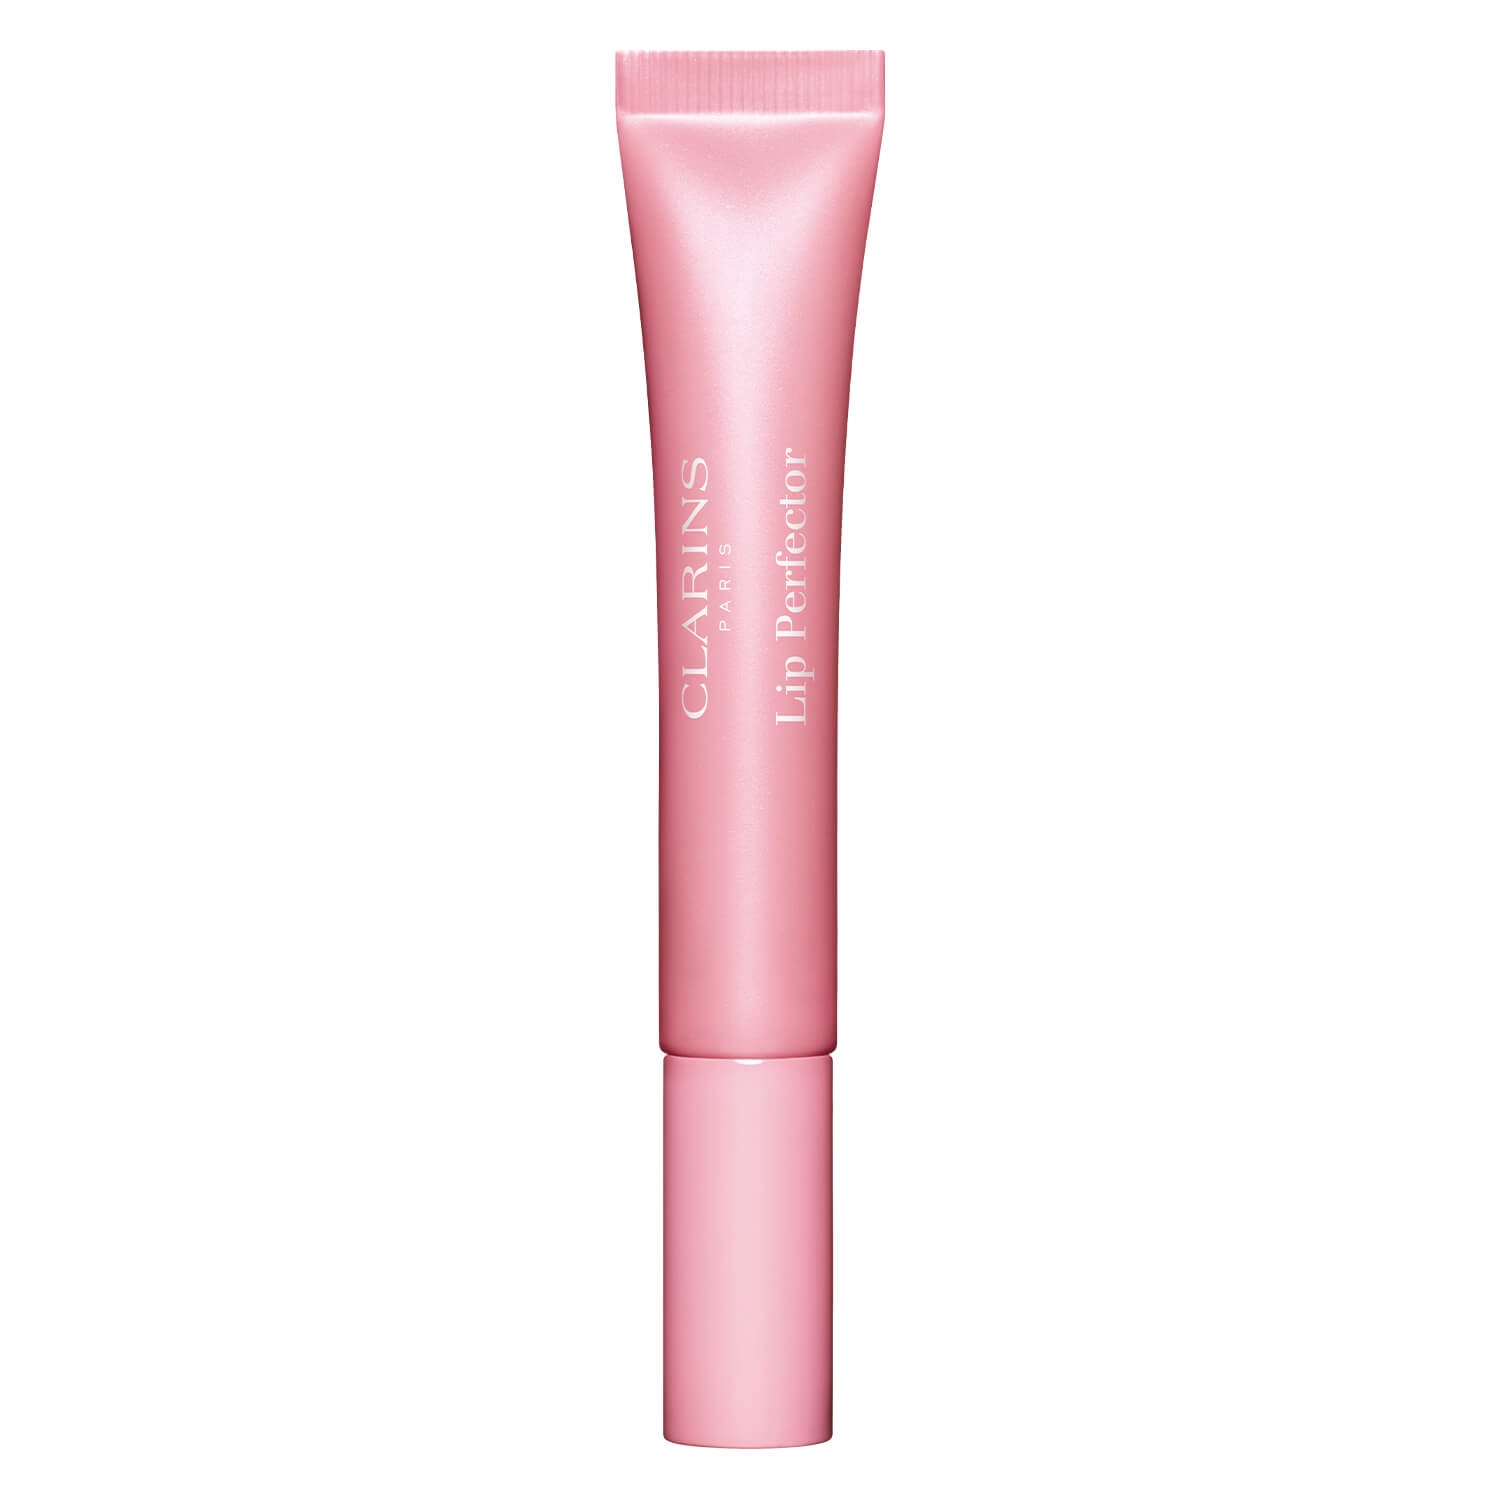 Produktbild von Lip Perfector - Soft Pink Glow 21